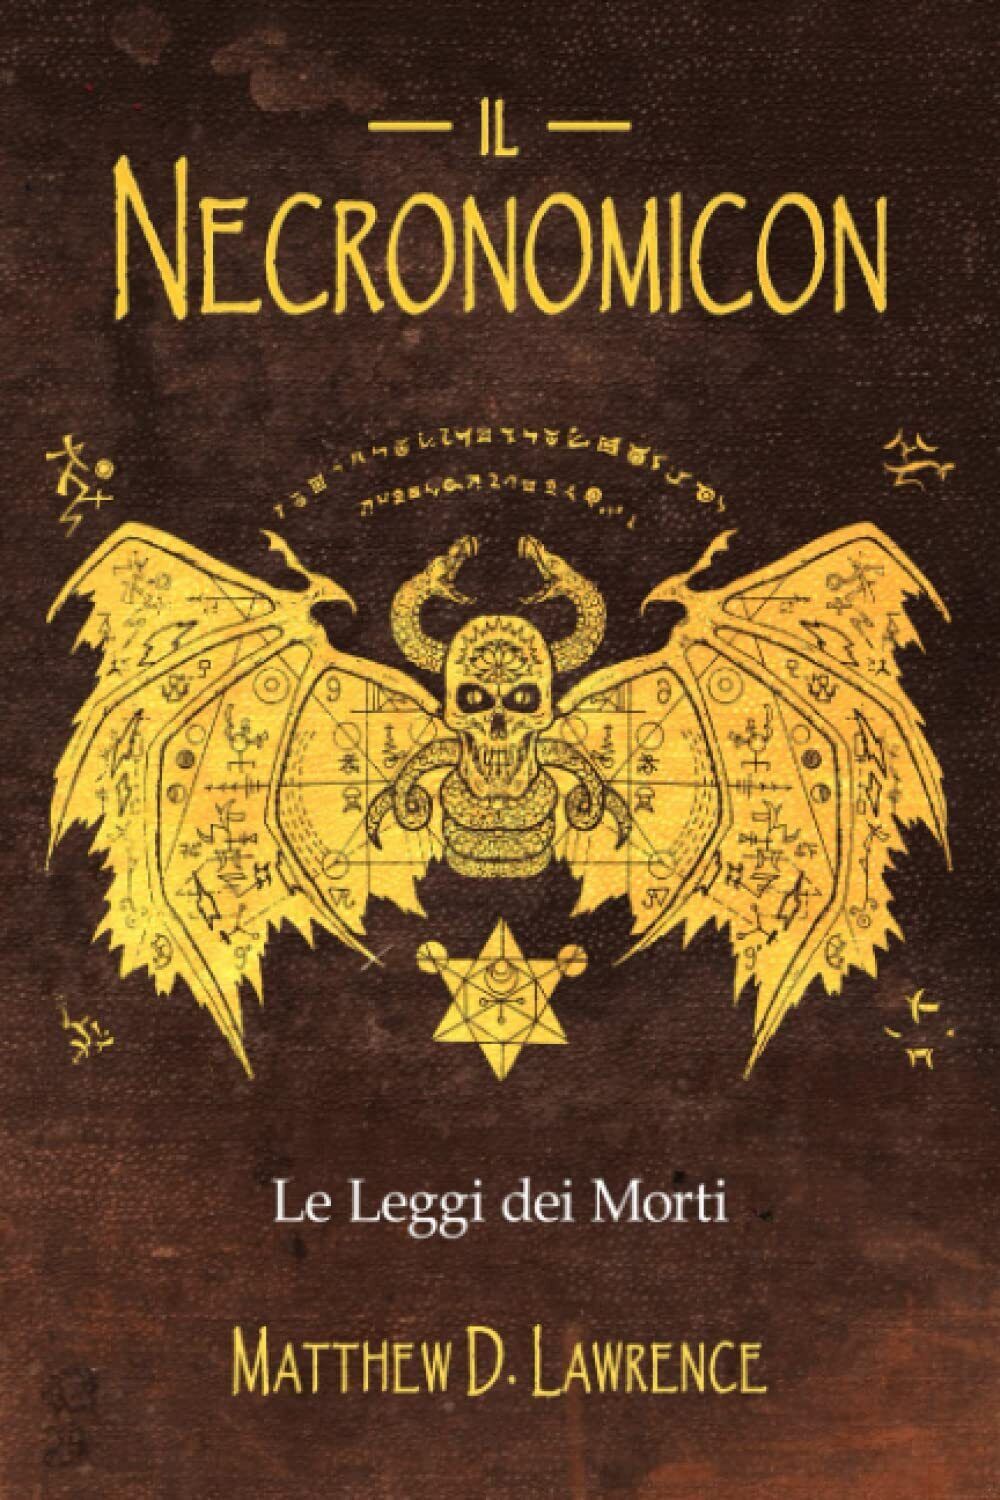 Il Necronomicon: Le Leggi dei Morti - Matthew D. Lawrence - ?Independently, 2022